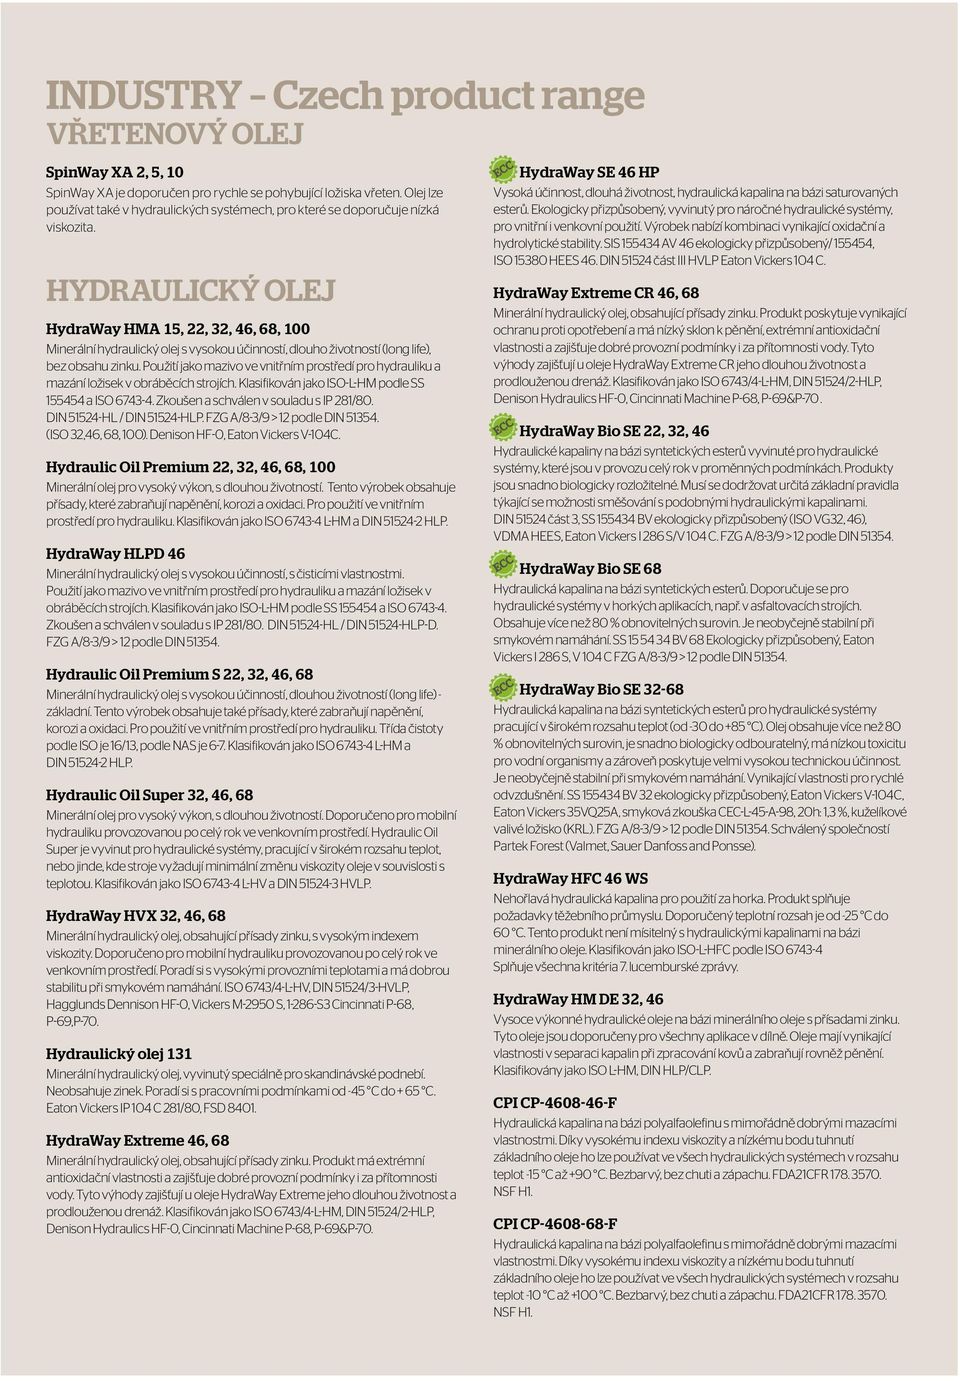 Hydraulický olej HydraWay HMA 15, 22, 32, 46, 68, 100 Minerální hydraulický olej s vysokou účinností, dlouho životností (long life), bez obsahu zinku.